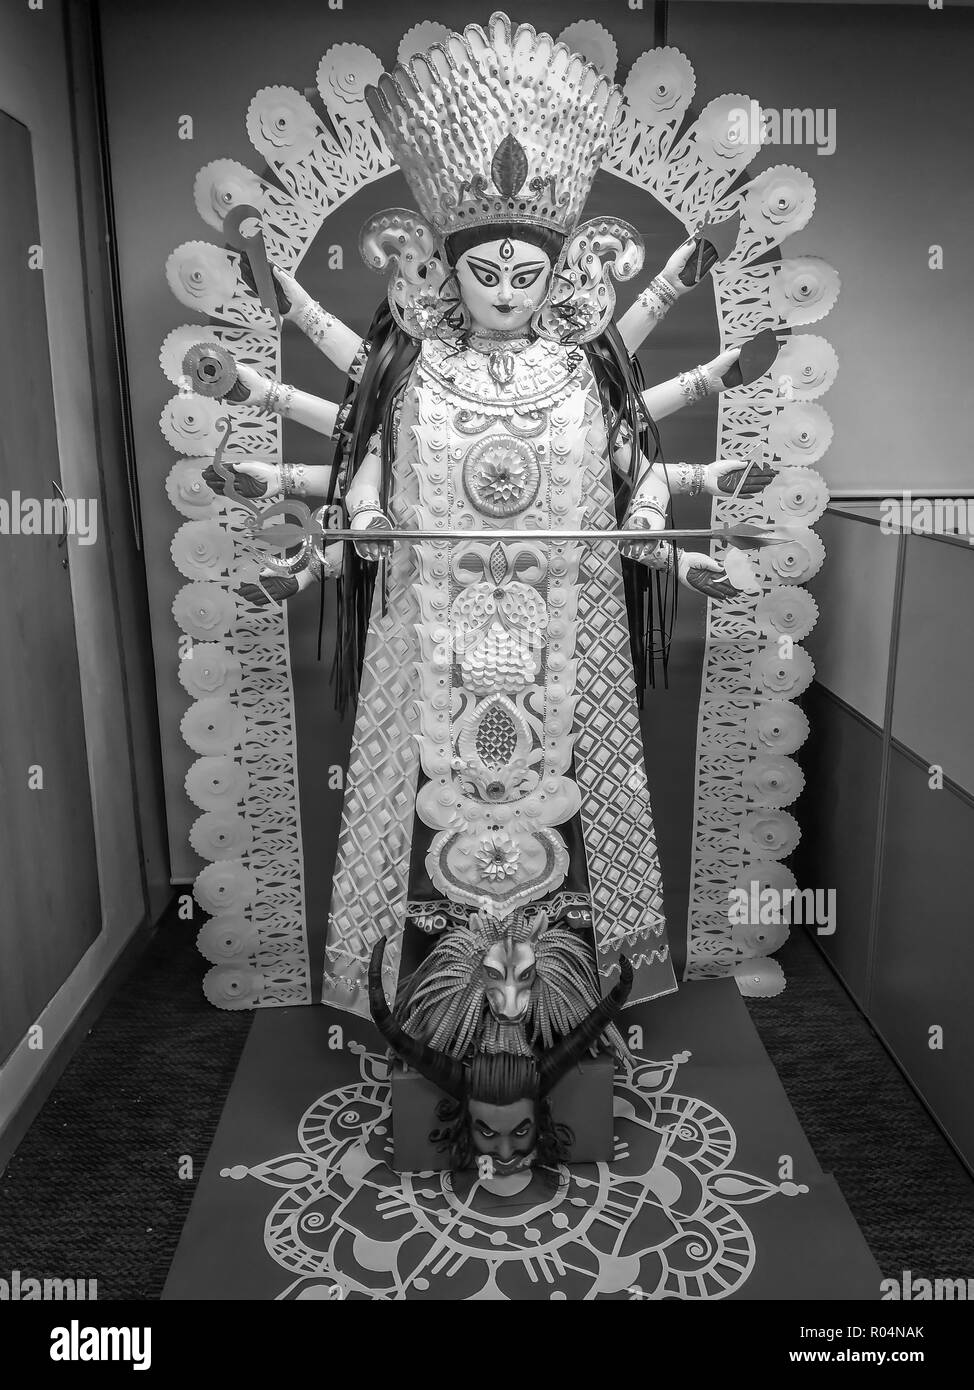 Ein schwarzes und weißes Papier Idol von Herrn Durga während der Durga Puja Feier in einem Büro Räumlichkeiten Stockfoto